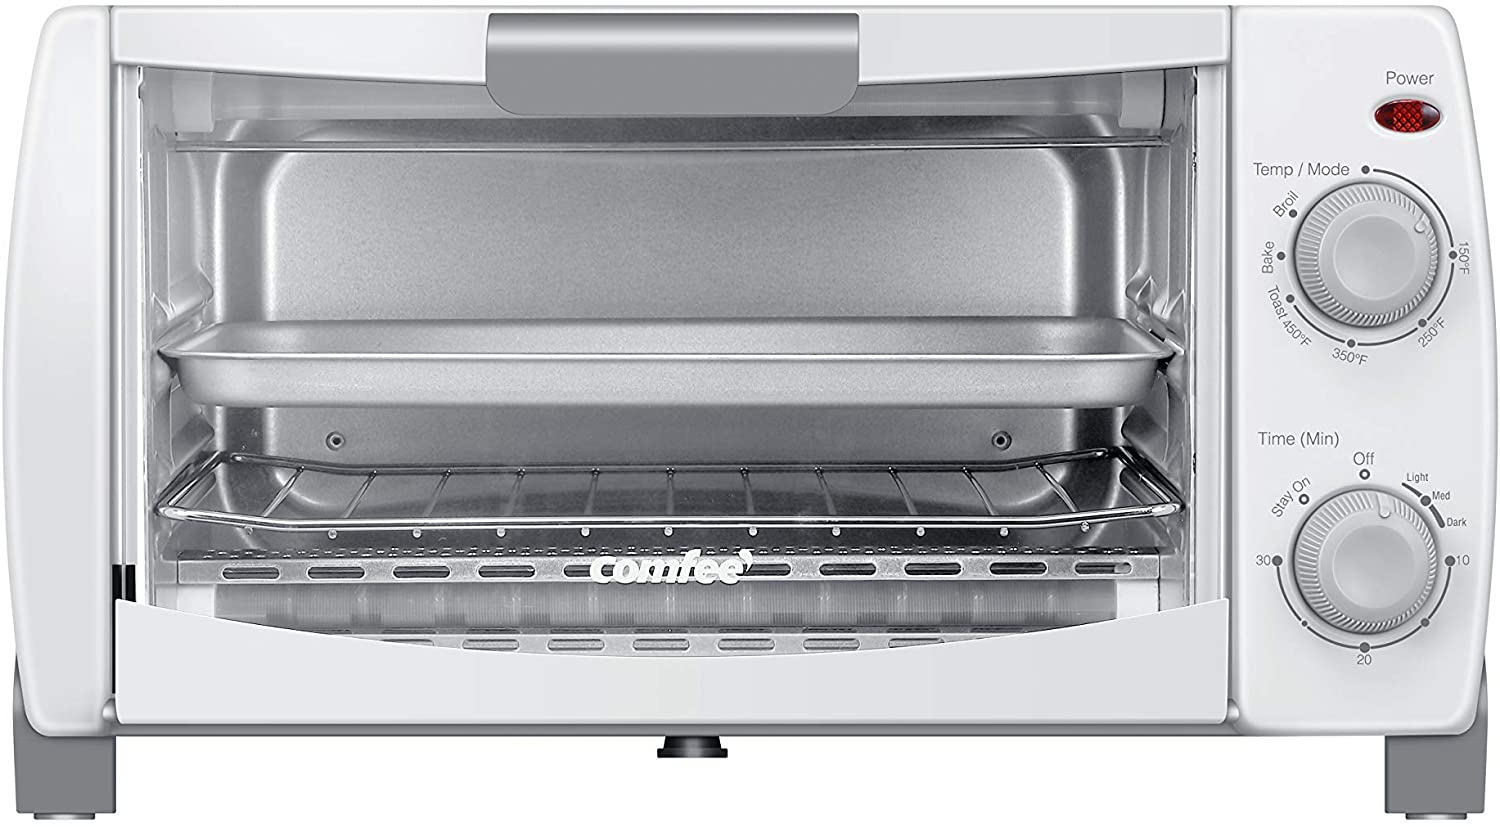 COMFEE' 1000 Watt Toaster Oven Countertop, 4-Slice